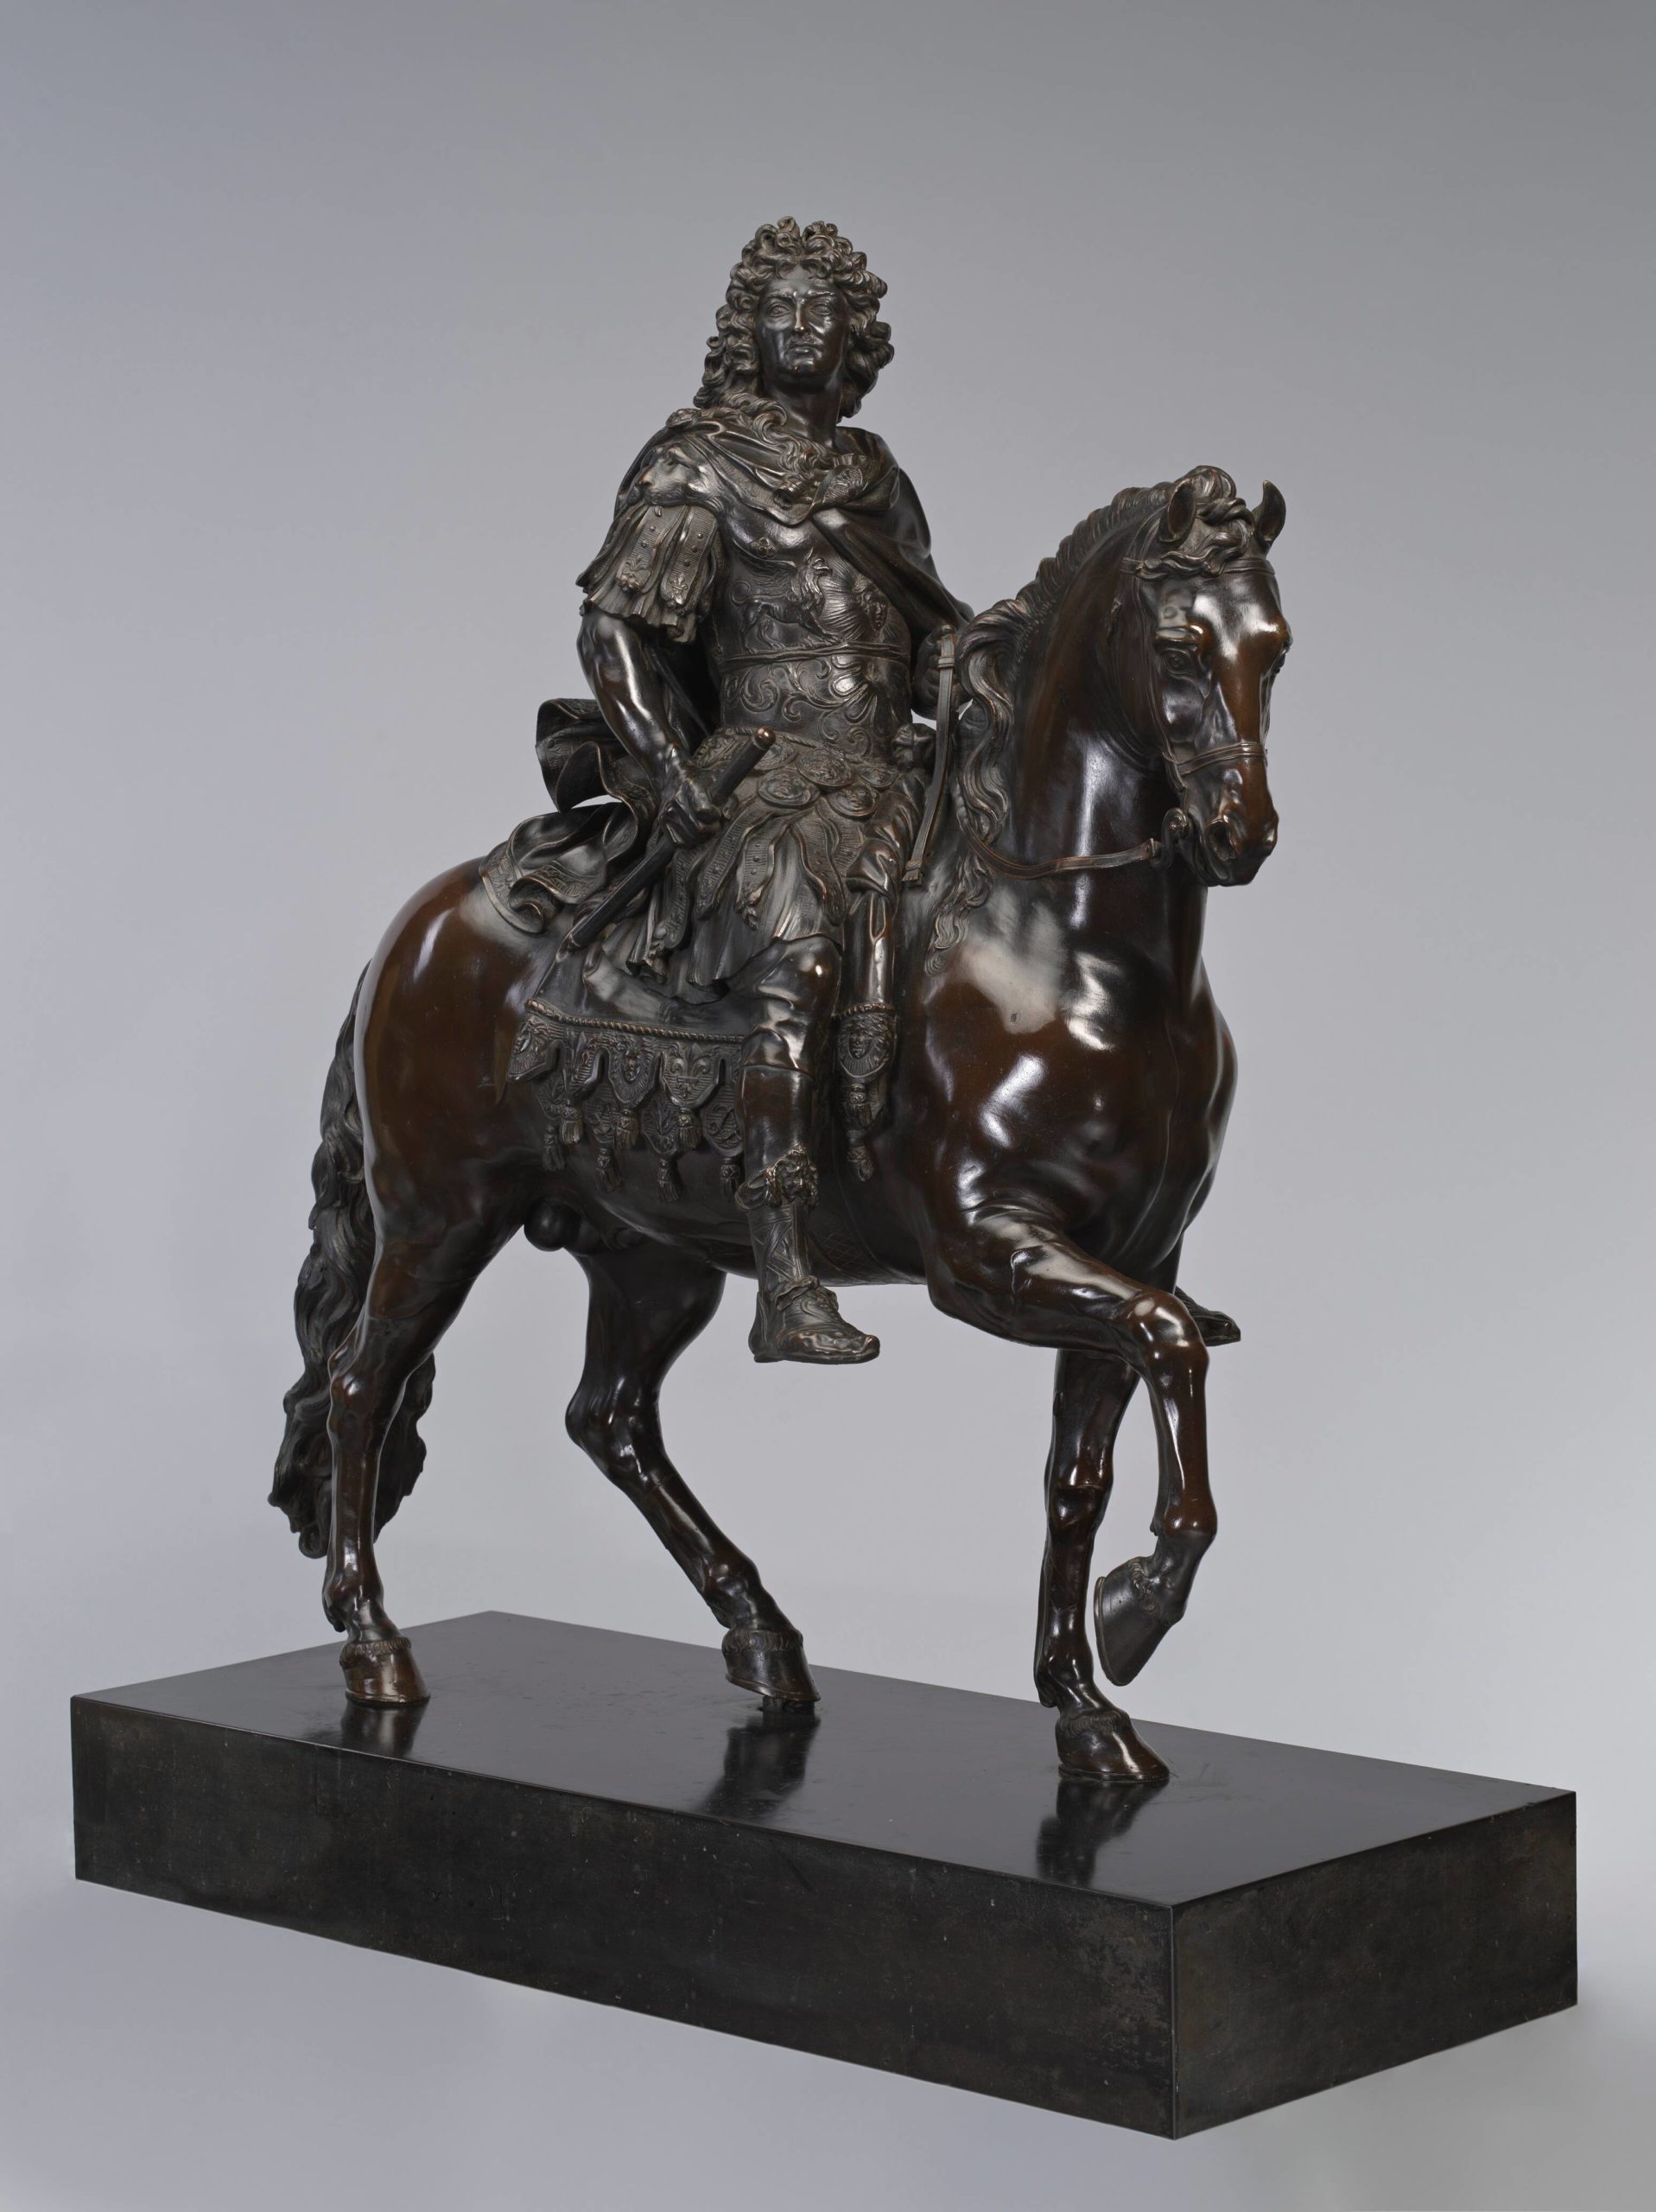 Intérêt patrimonial majeur pour le modèle réduit de la statue équestre de Louis XIV